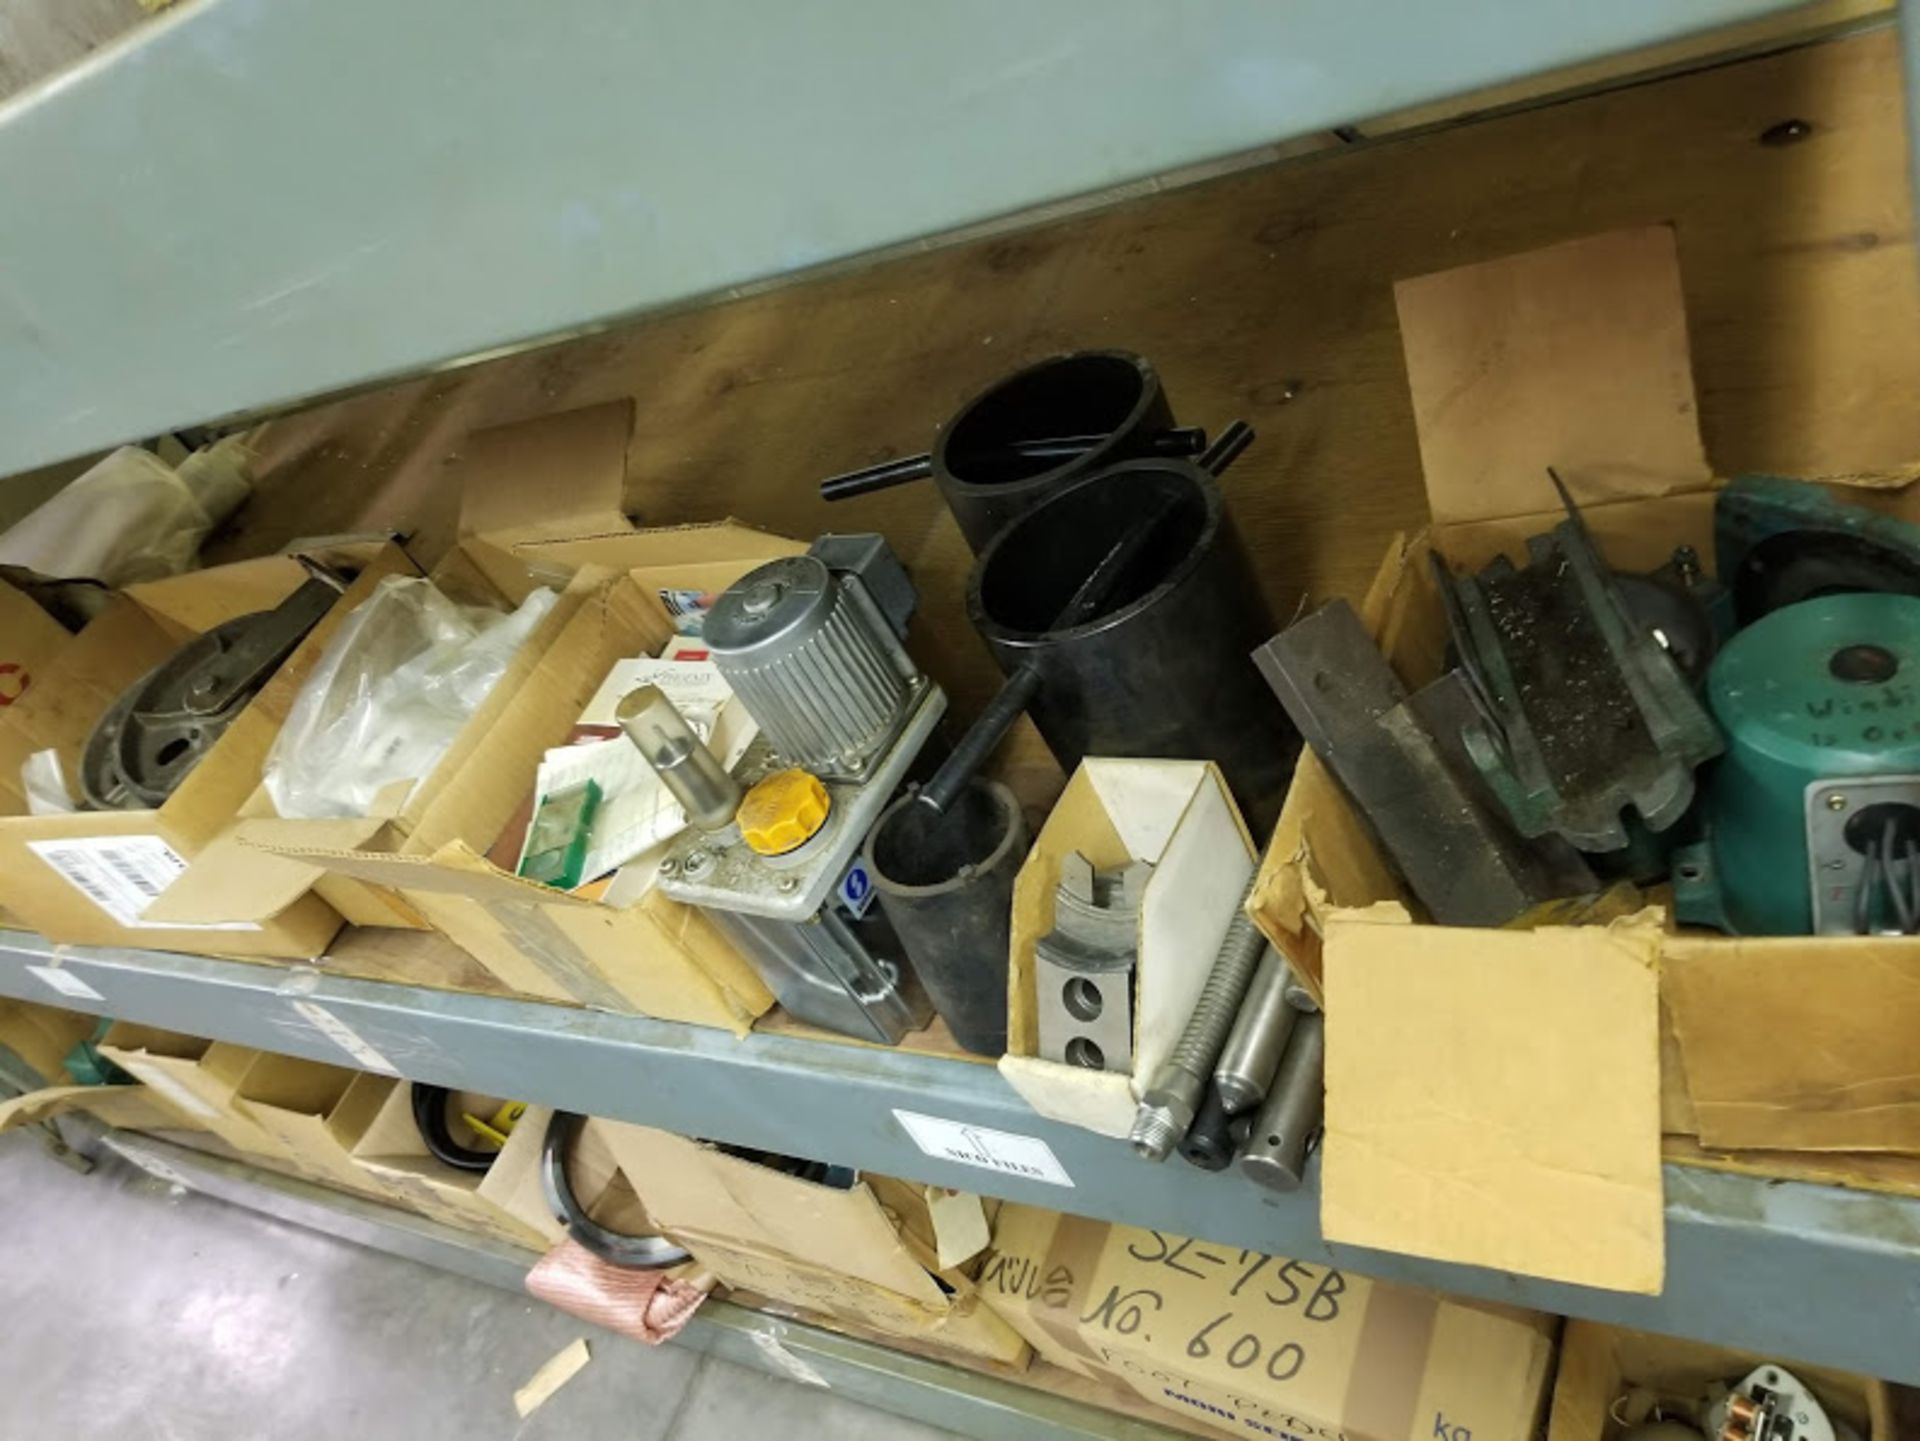 Contents of Shelf, Dayton Chain Hoist, Caster Wheels, Coolant Pump, & Misc Parts - Image 3 of 4